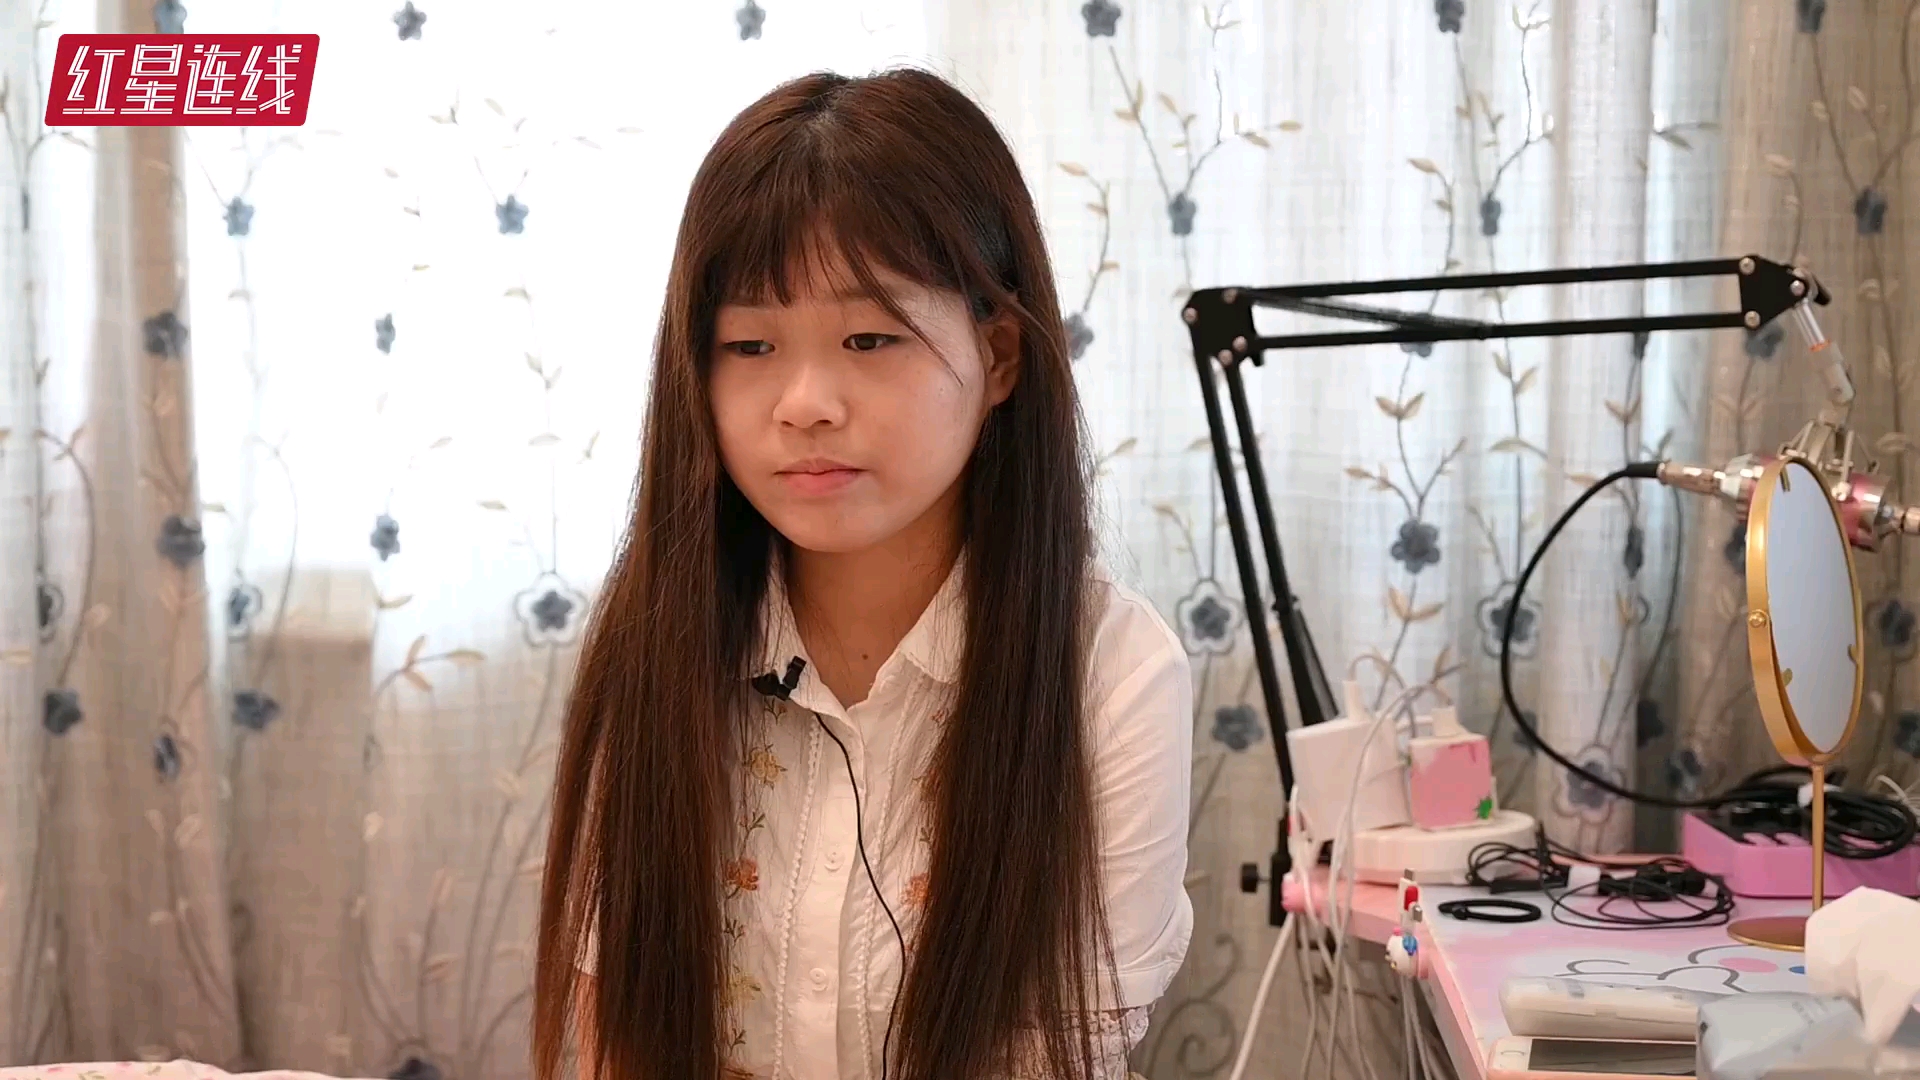 尿毒症5年，湖南19岁女孩靠游戏直播维生，起诉父母遗弃法院未受理